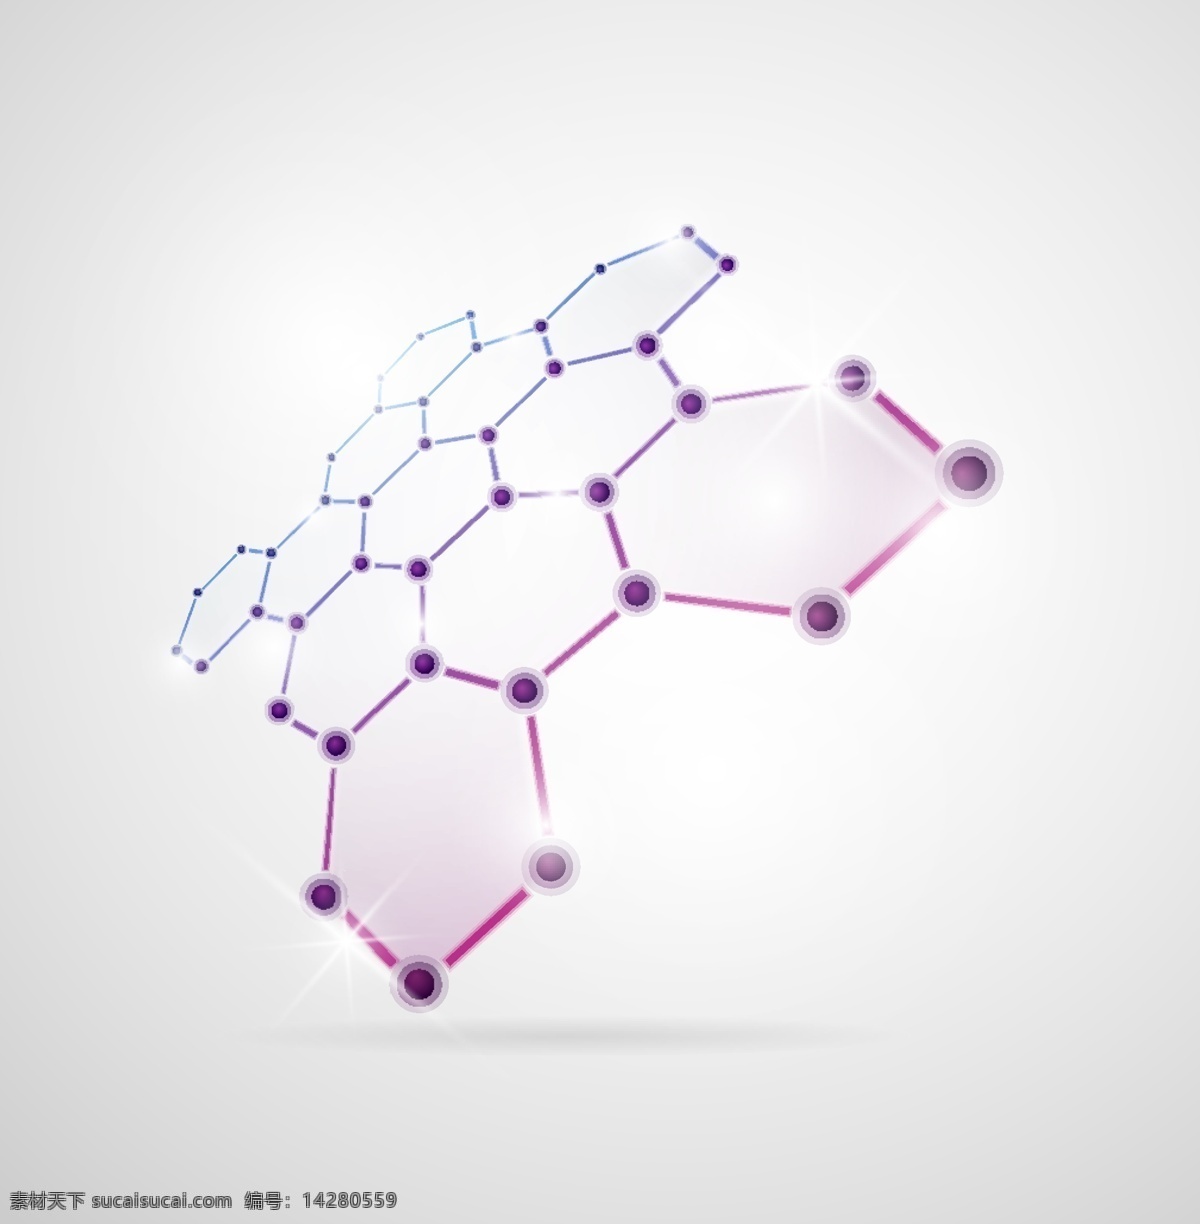 分子结构图 分子 结构图 医疗 生活百科 矢量素材 白色